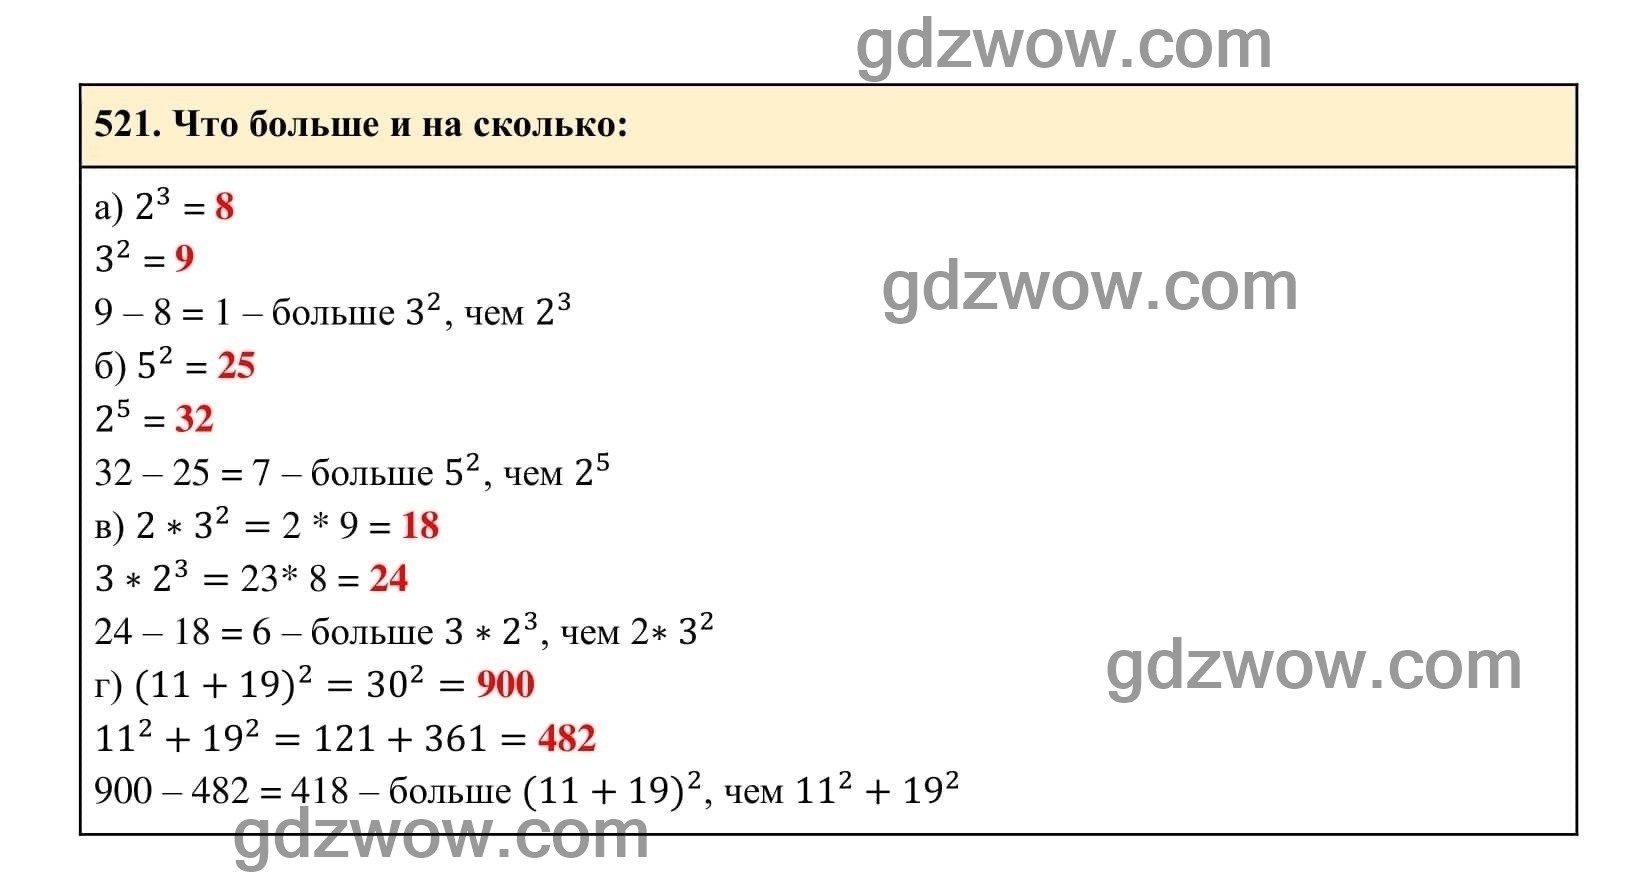 Упражнение 521 - ГДЗ по Алгебре 7 класс Учебник Макарычев (решебник) - GDZwow